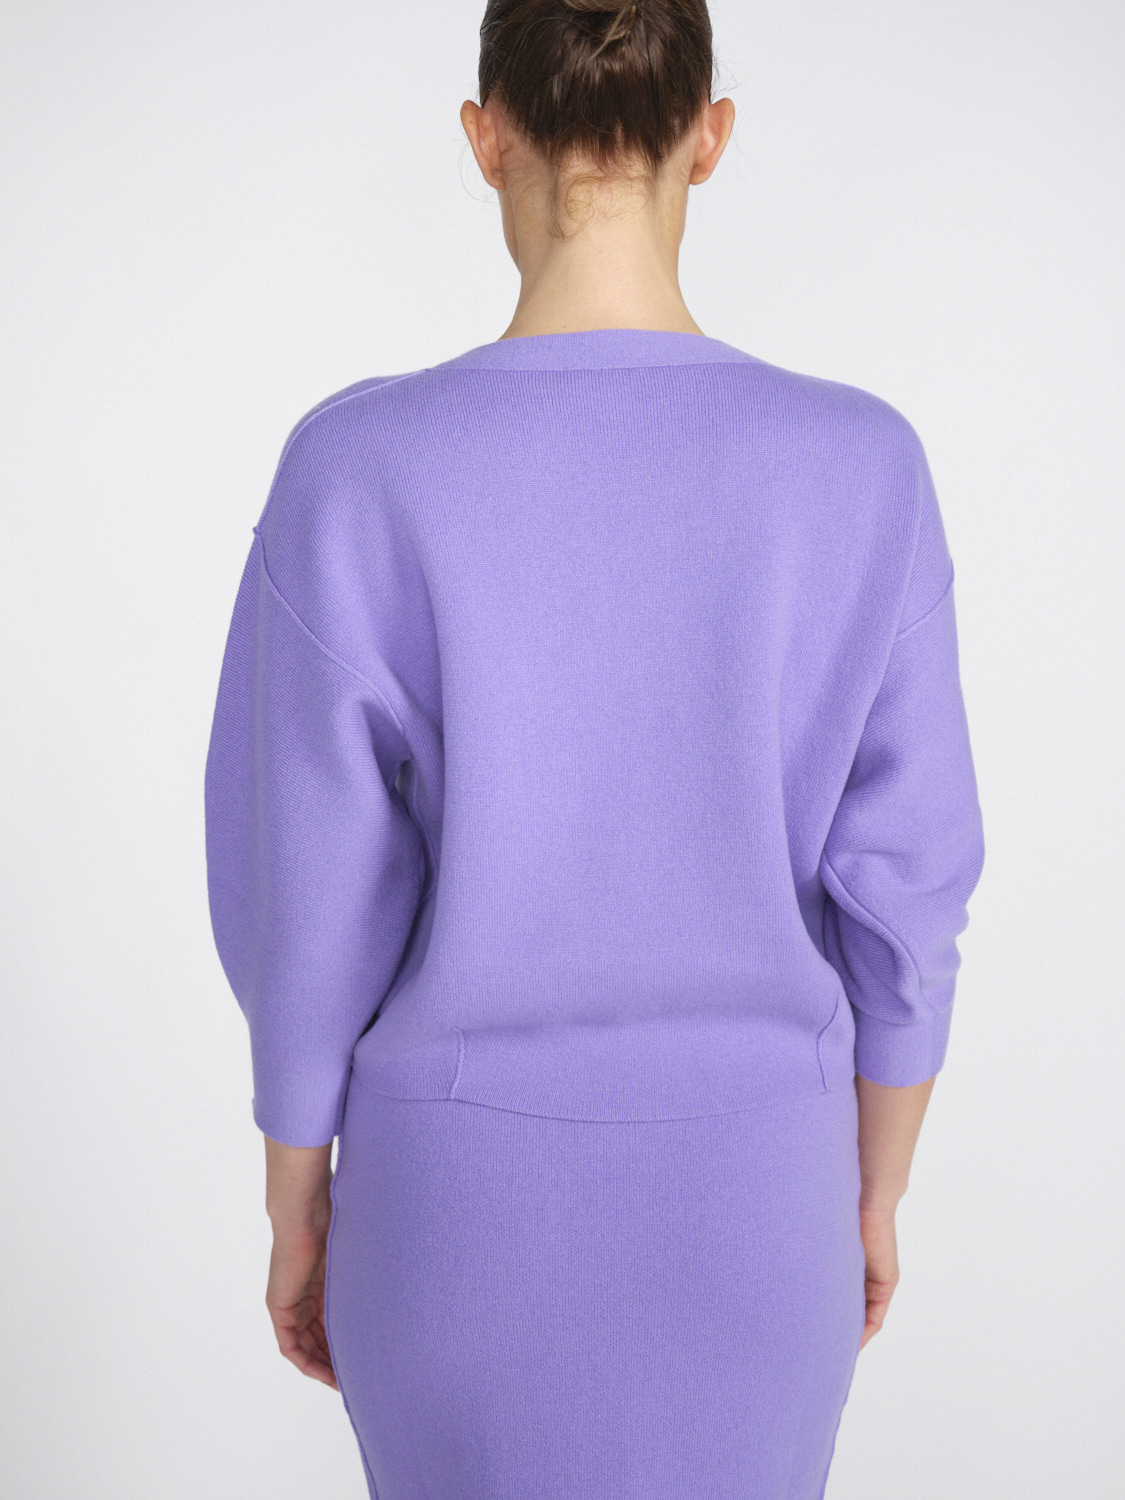 Iris von Arnim Arielle - Cropped cashmere jumper  lila L